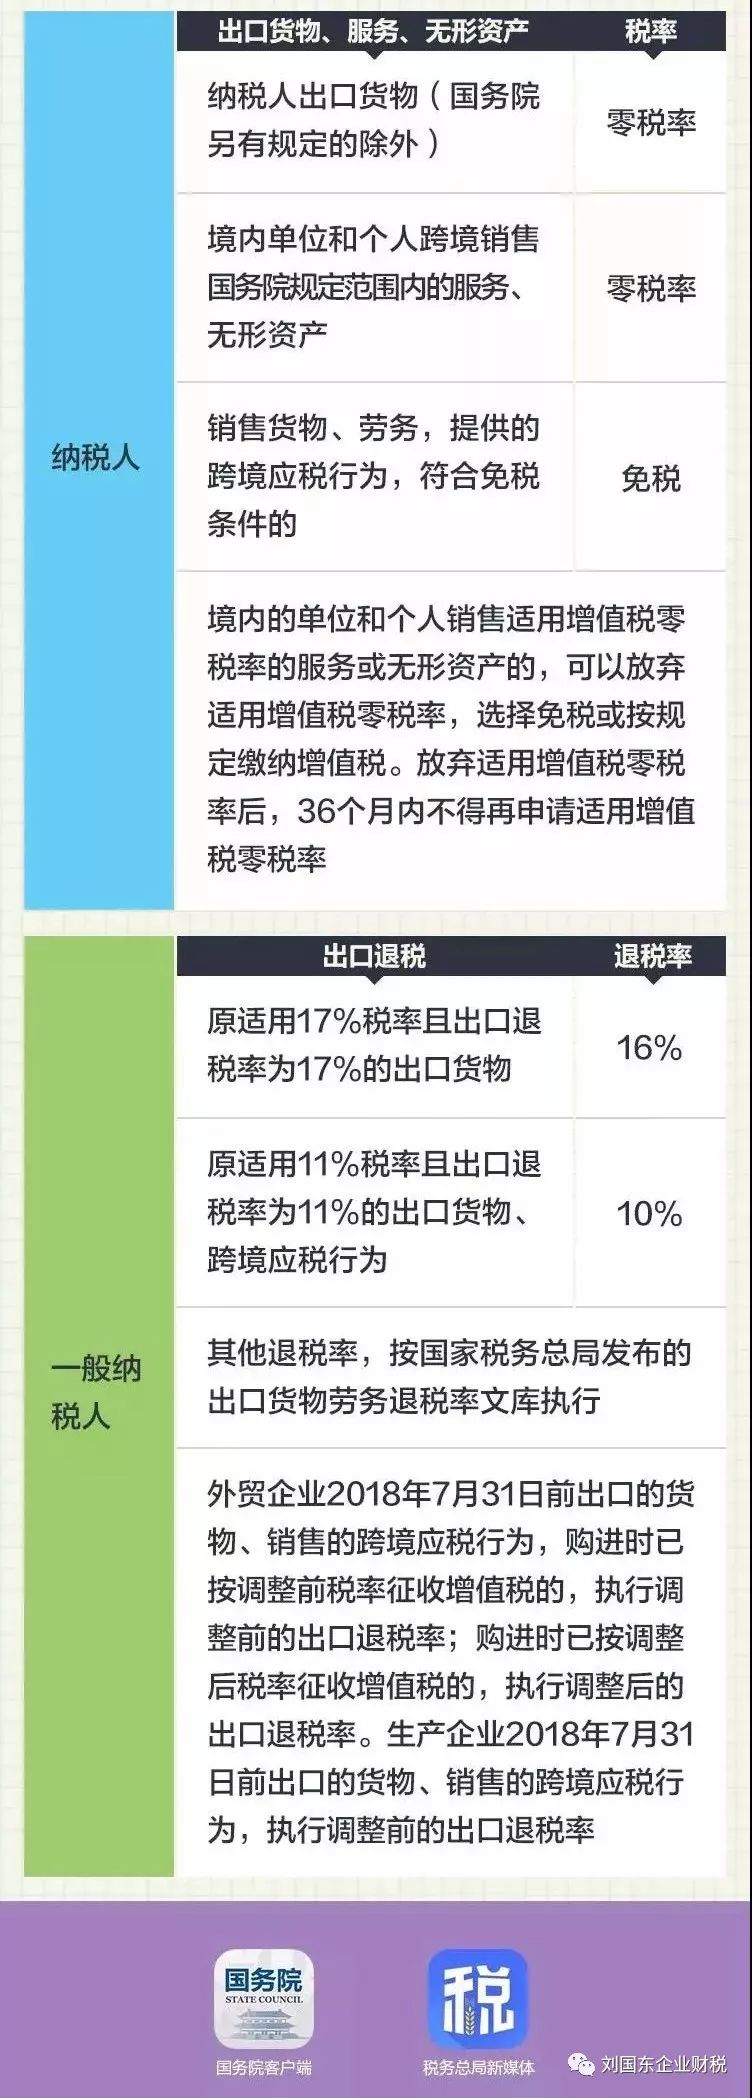 【刘国东企业财税】收藏!2018最新最全增值税